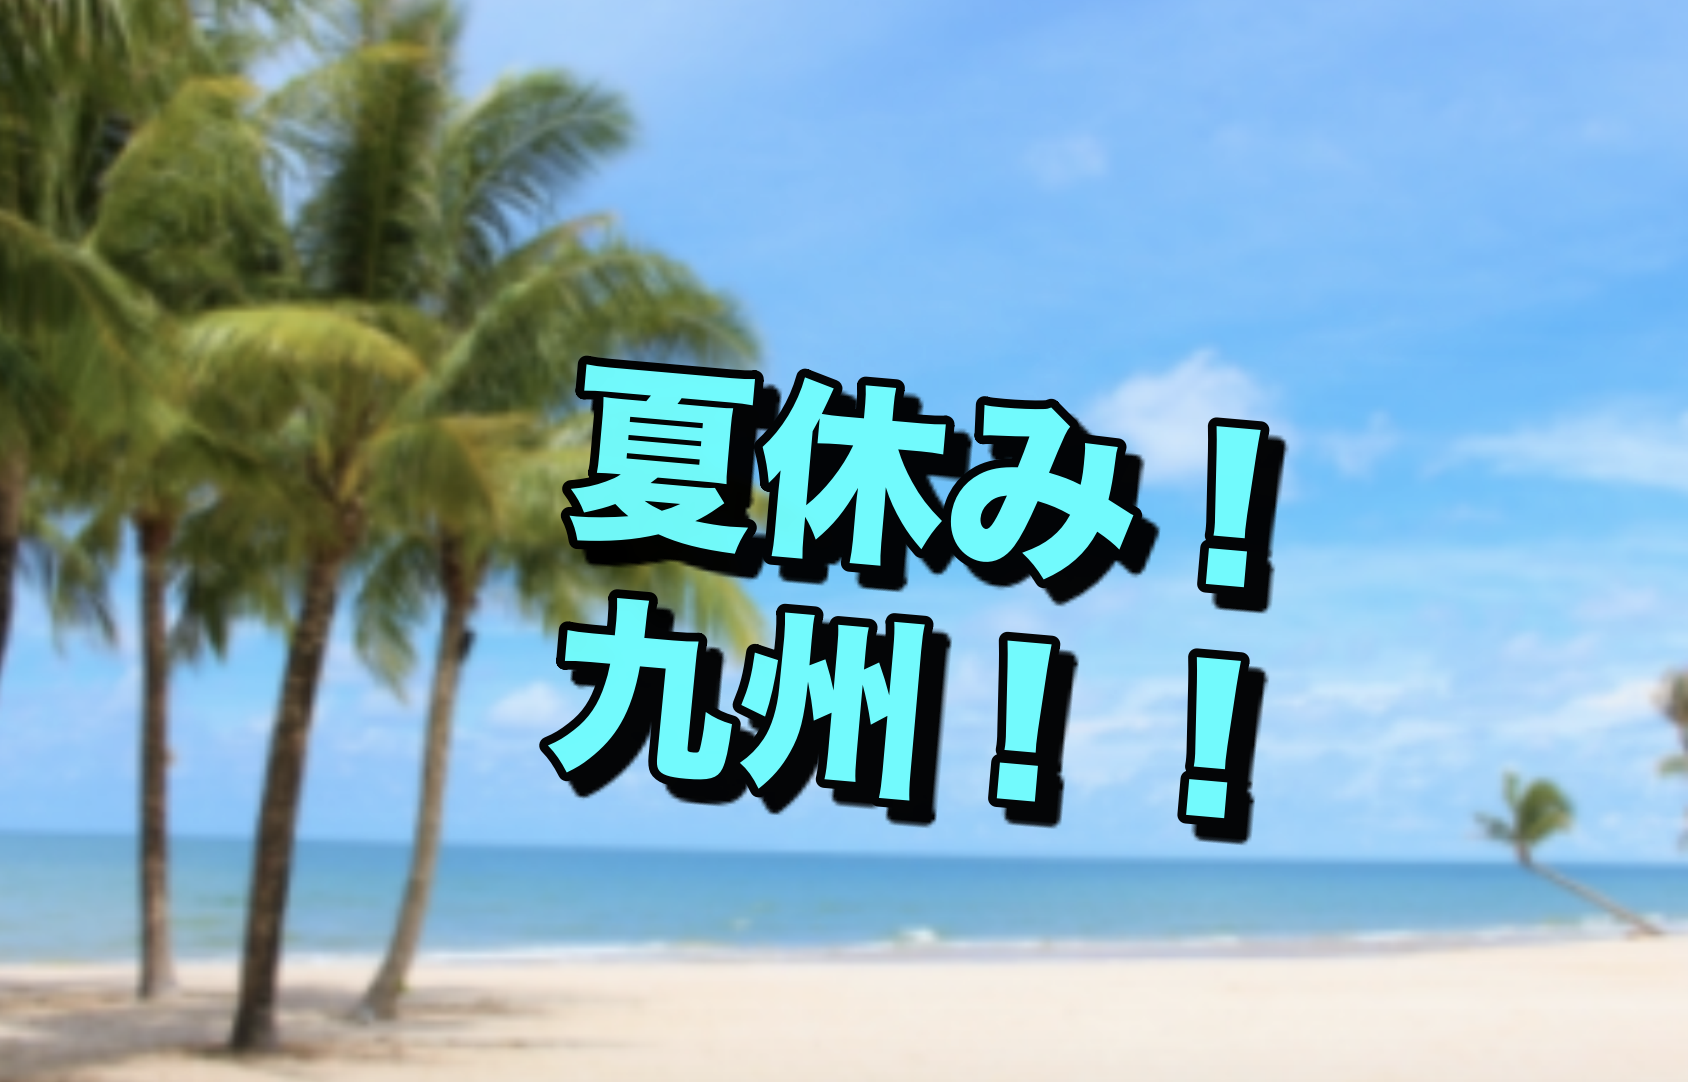 【雑談】夏休みどーしよ、国内なら九州行ってみたい